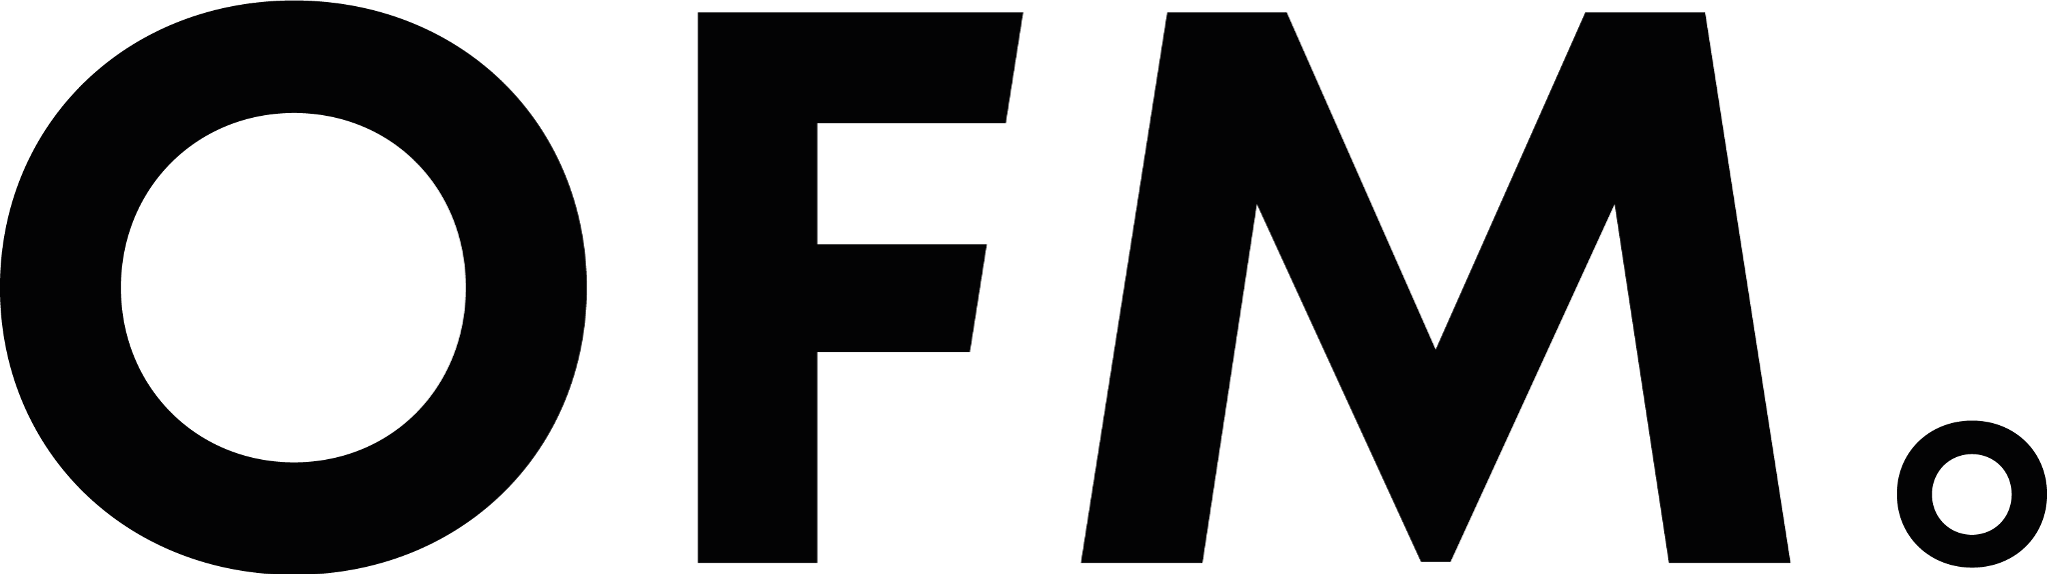 OFM. logo